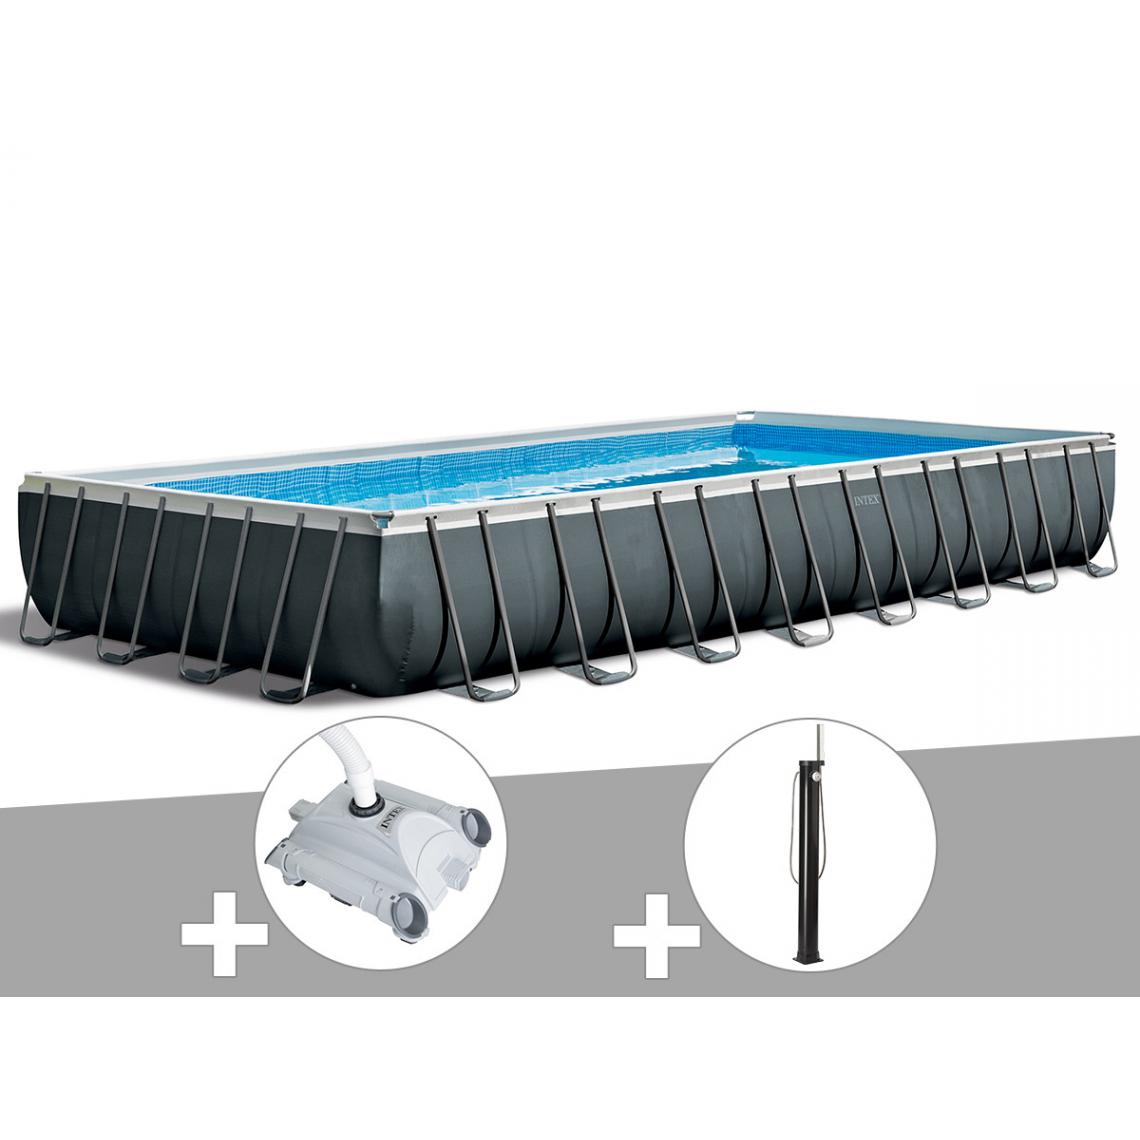 Intex - Kit piscine tubulaire Intex Ultra XTR Frame rectangulaire 9,75 x 4,88 x 1,32 m + Robot nettoyeur + Douche solaire - Piscine Tubulaire